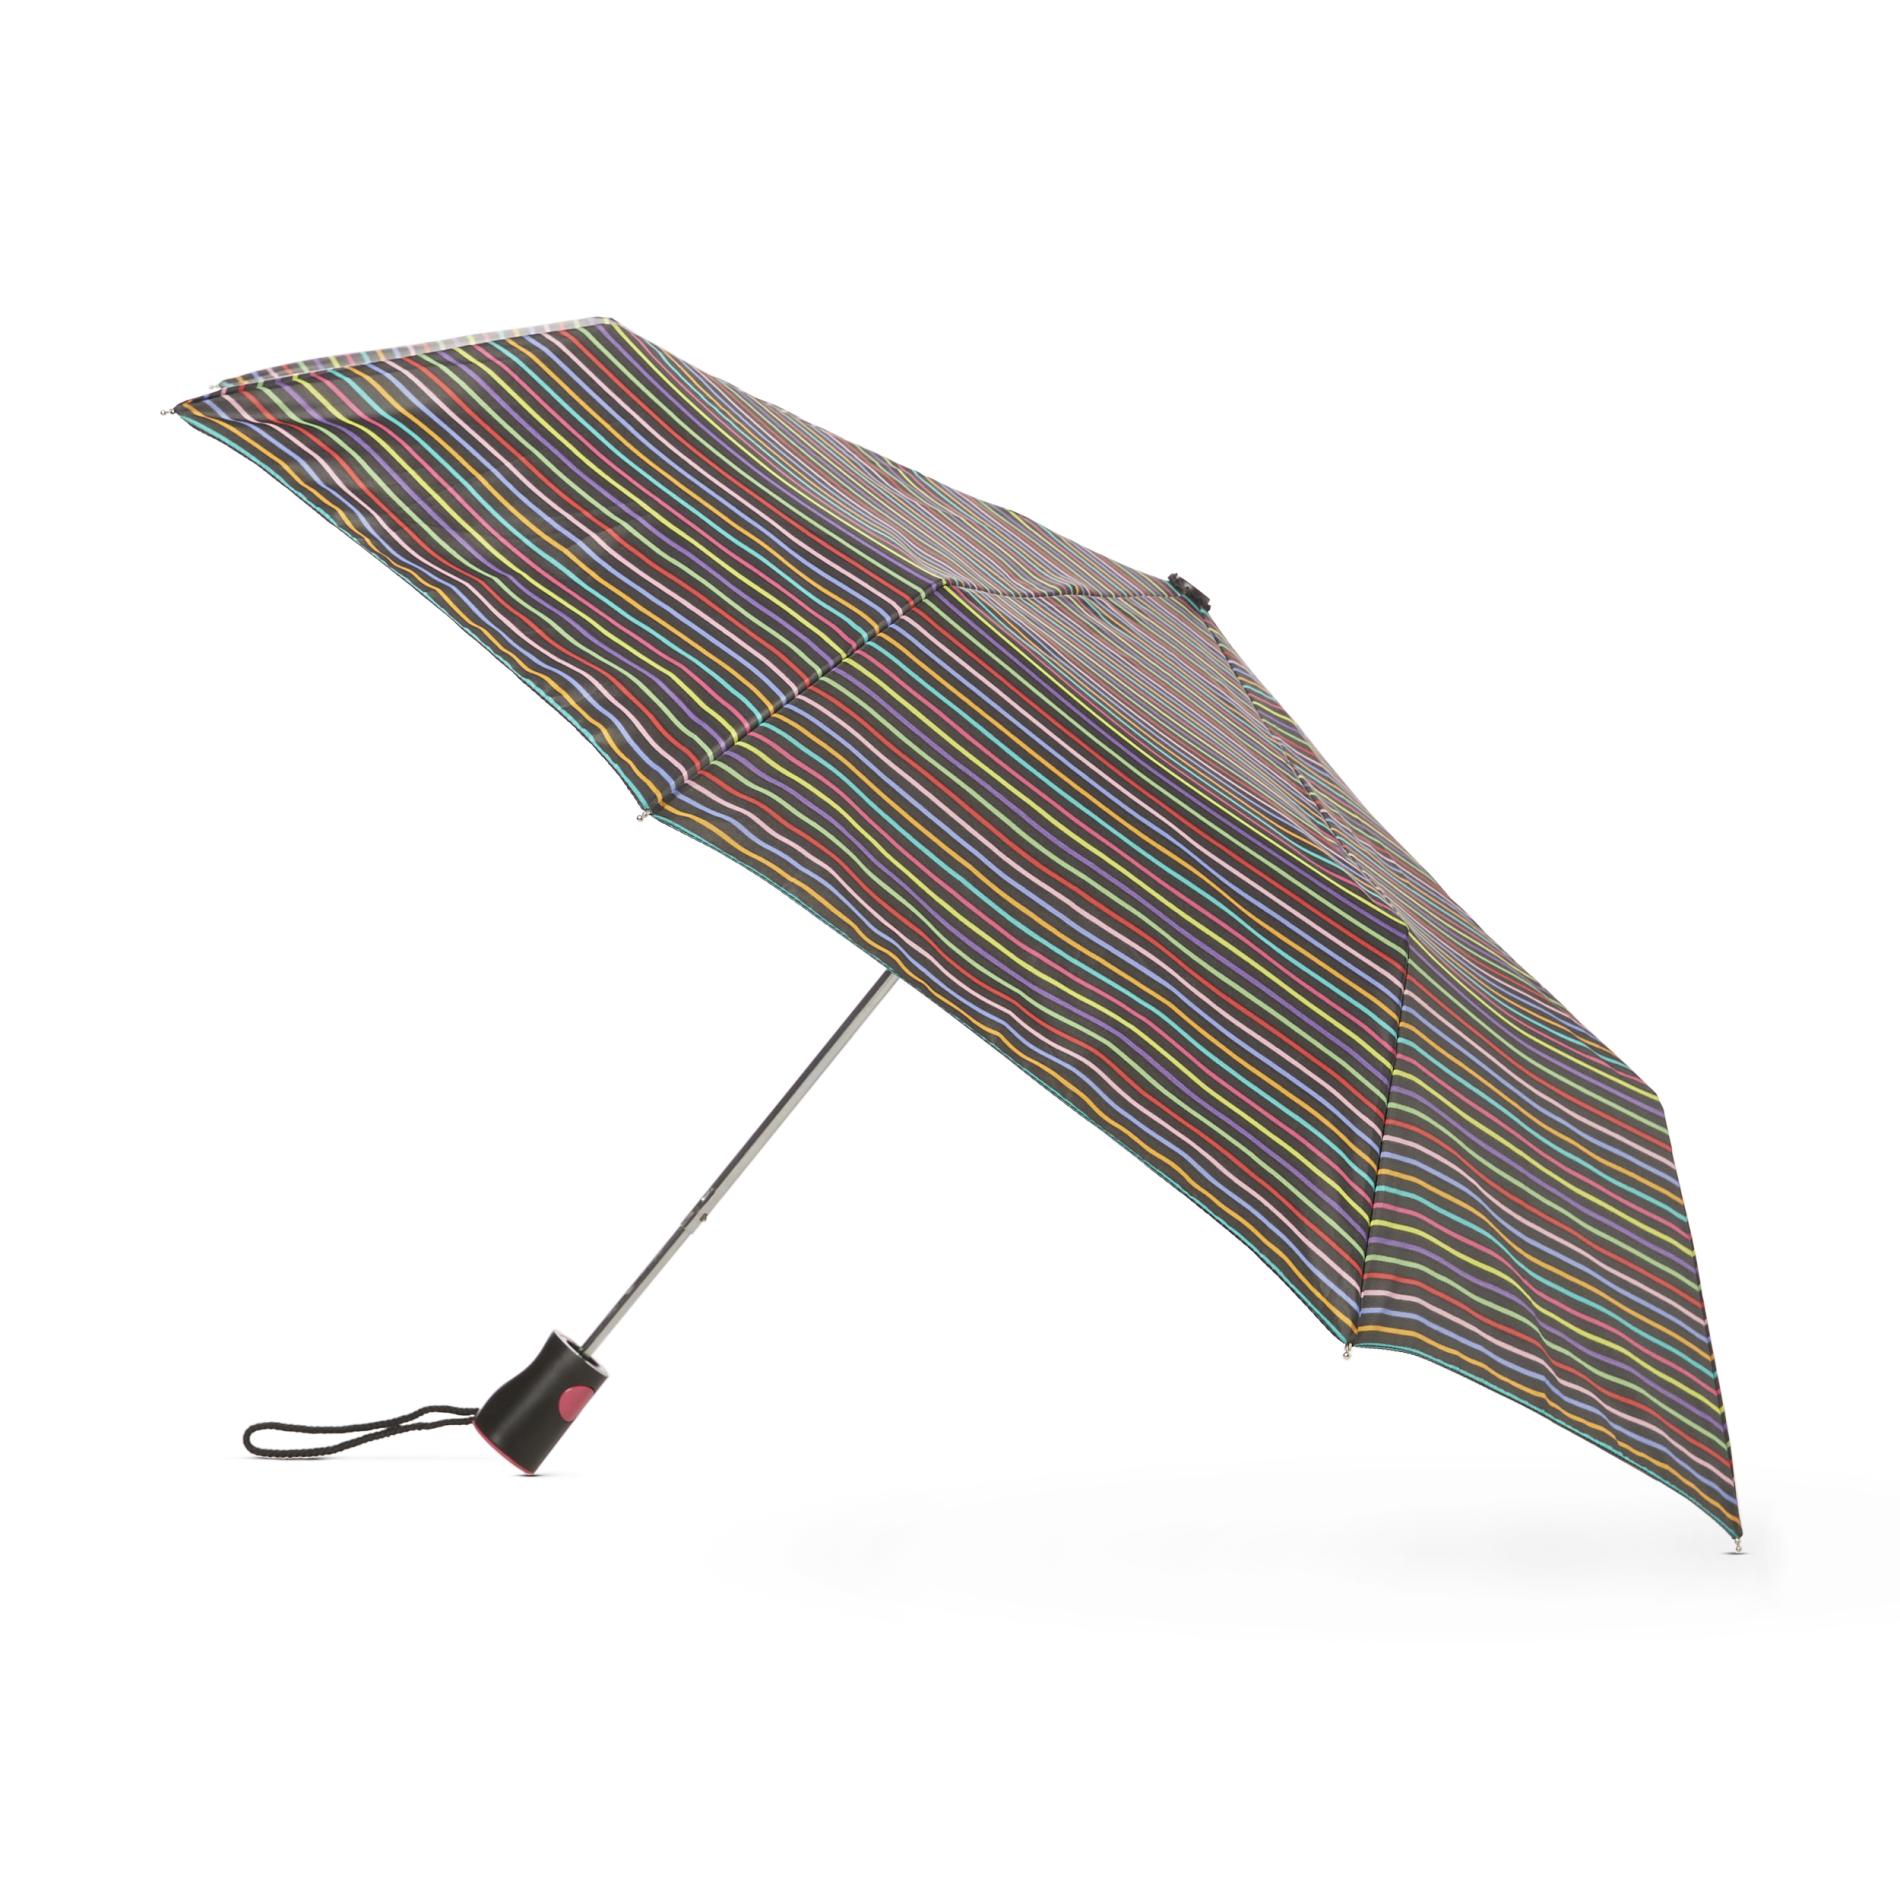 Totes Automatic Travel Umbrella & Cover - Striped